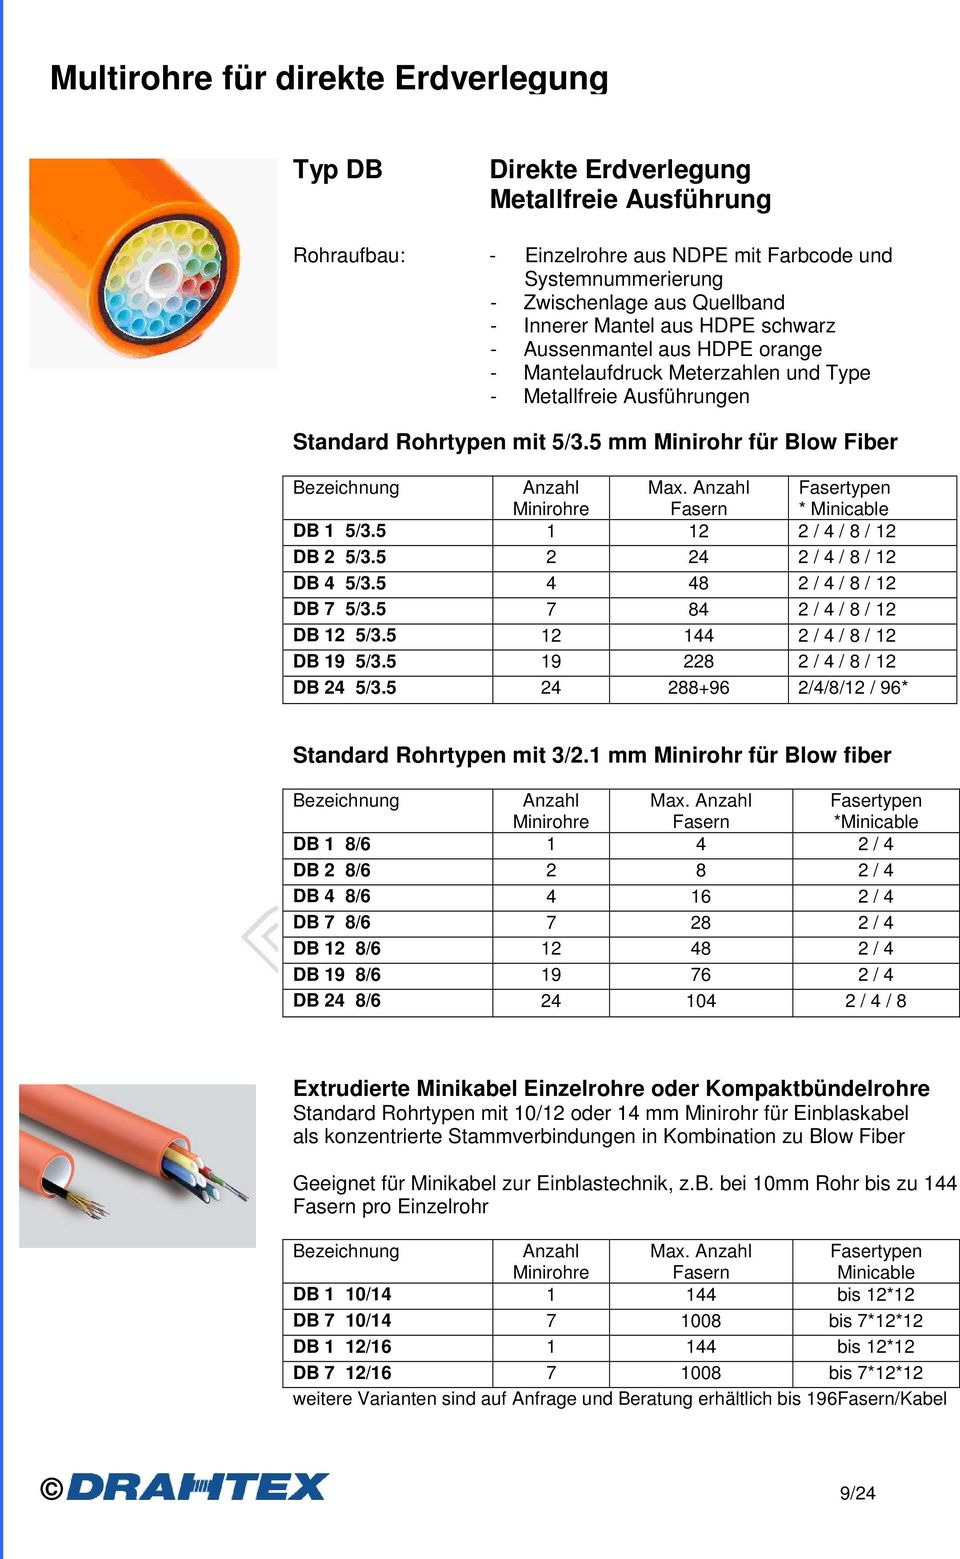 5 mm Minirohr für Blow Fiber Bezeichnung Anzahl Minirohre Max. Anzahl Fasern Fasertypen * Minicable DB 1 5/3.5 1 12 2 / 4 / 8 / 12 DB 2 5/3.5 2 24 2 / 4 / 8 / 12 DB 4 5/3.